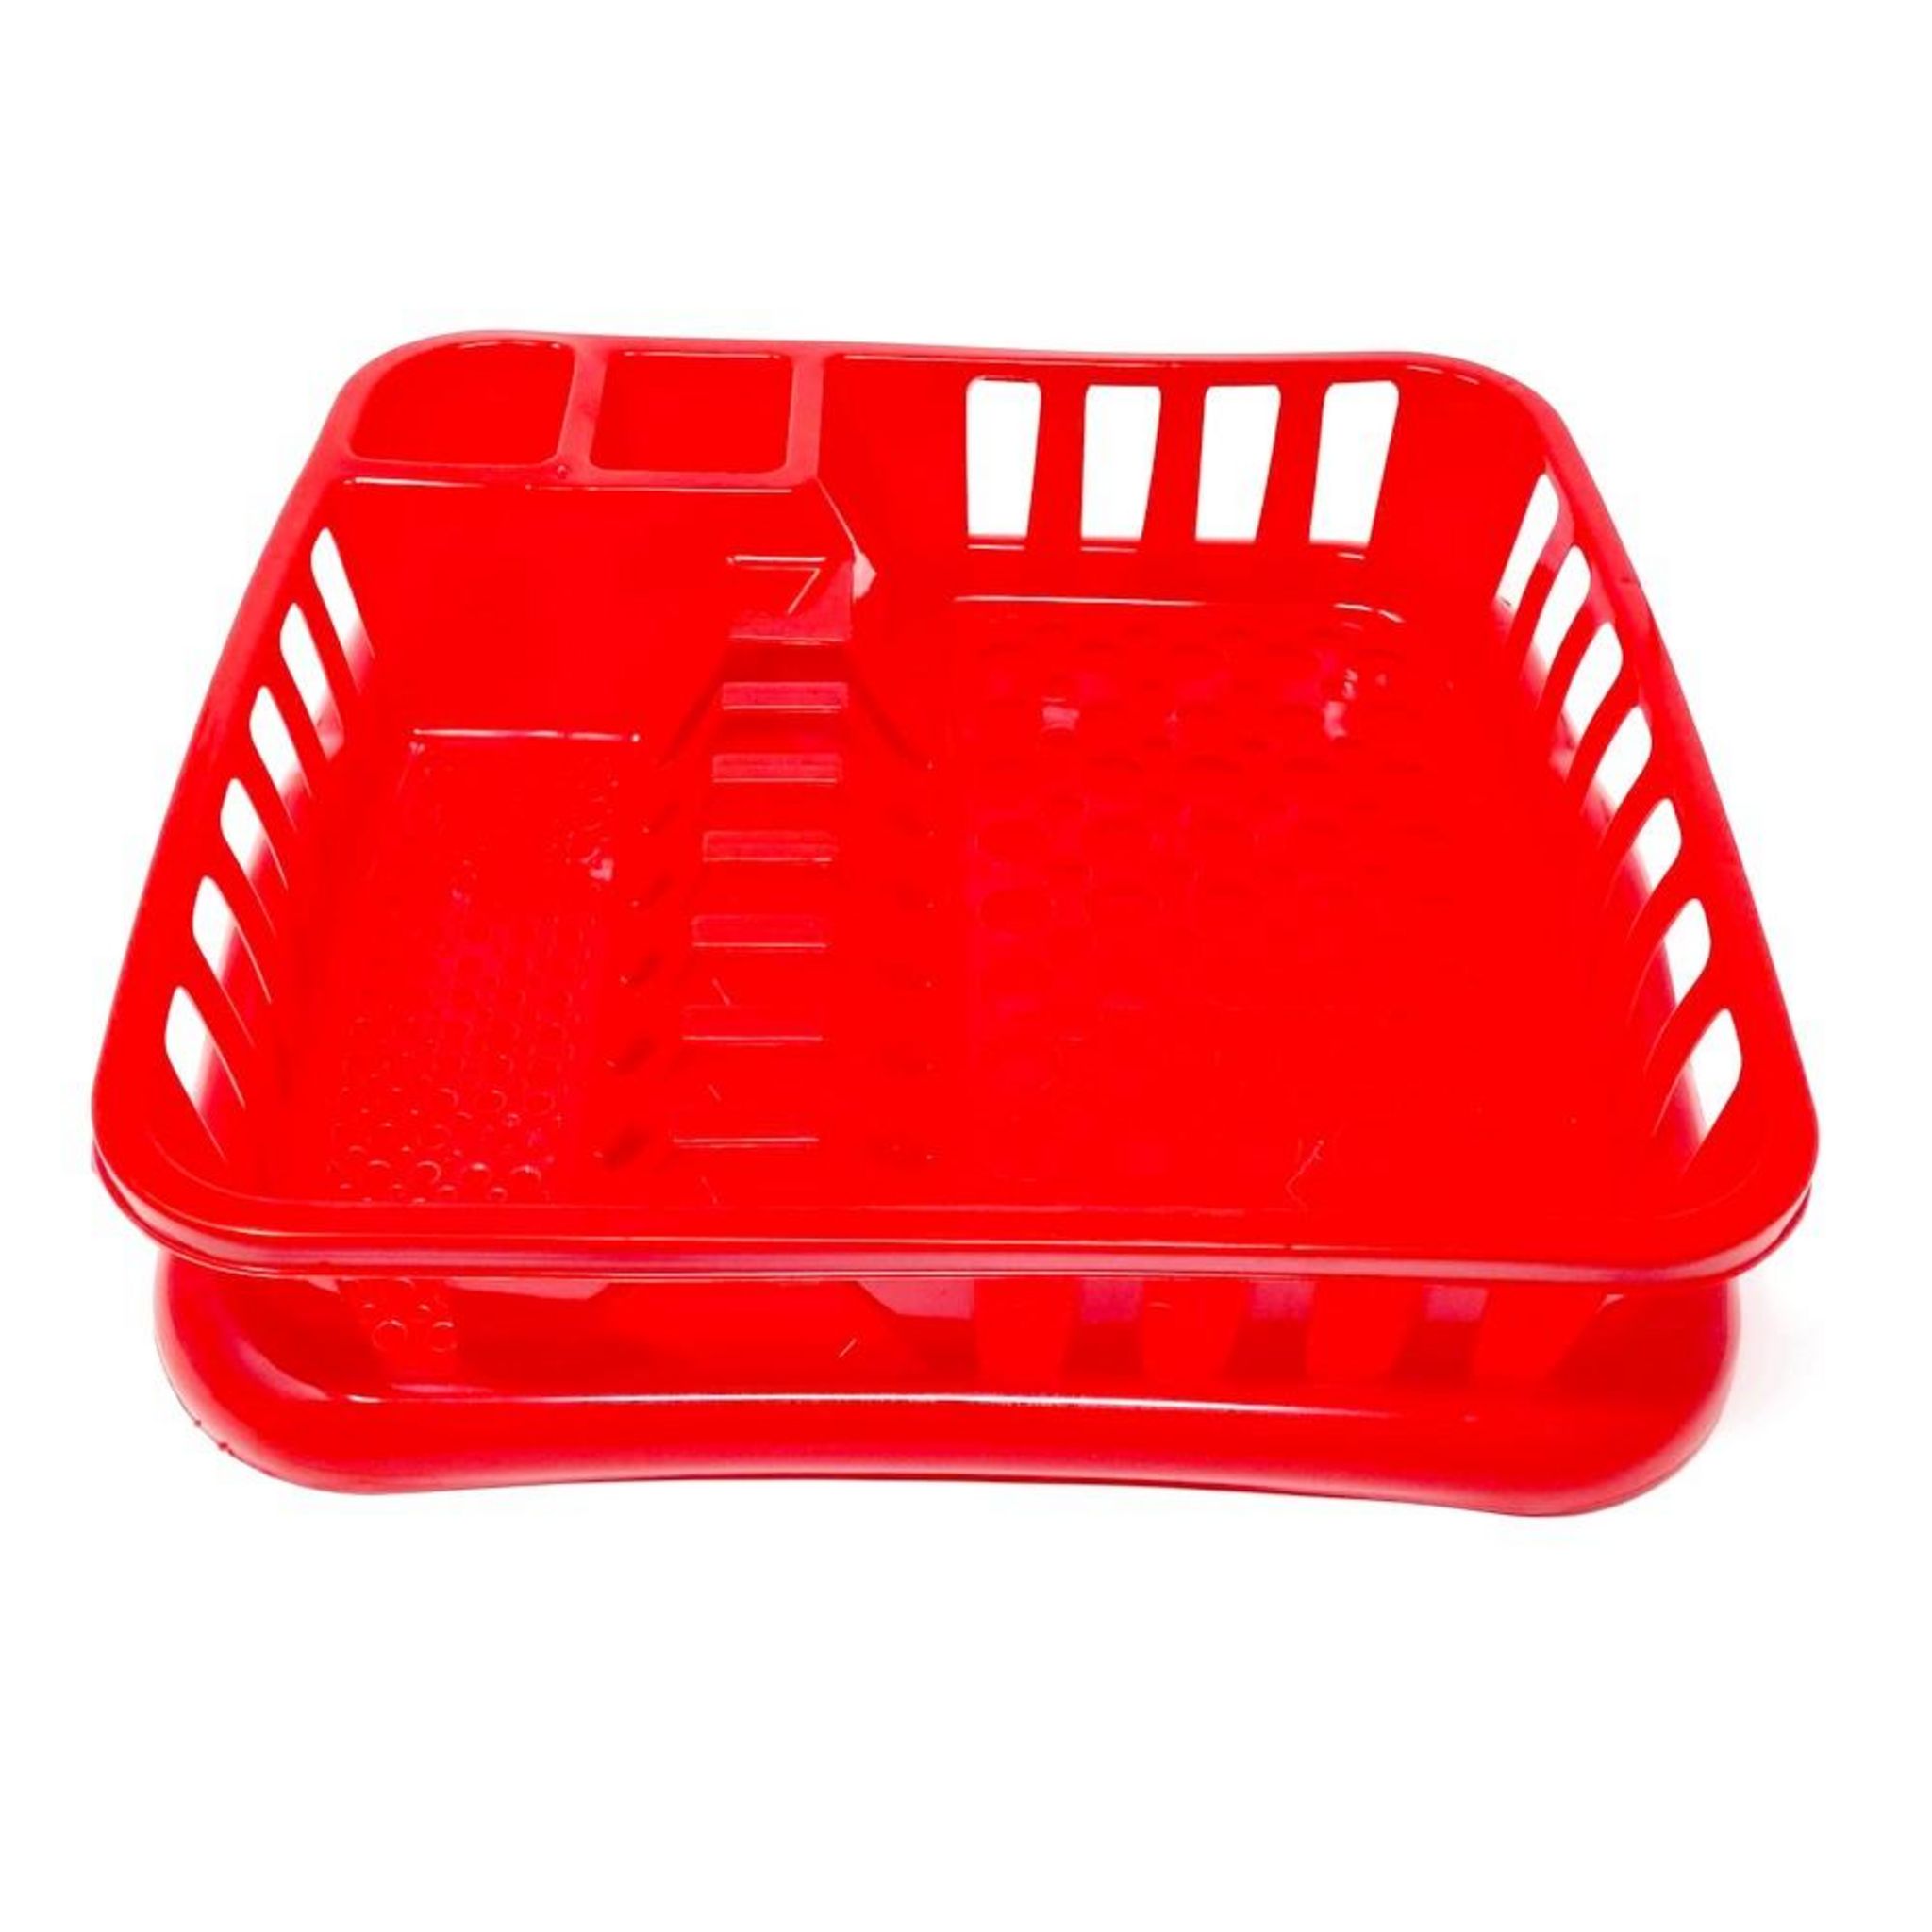 Égouttoir à vaisselle en plastique rouge bordeaux 47x39x10cm